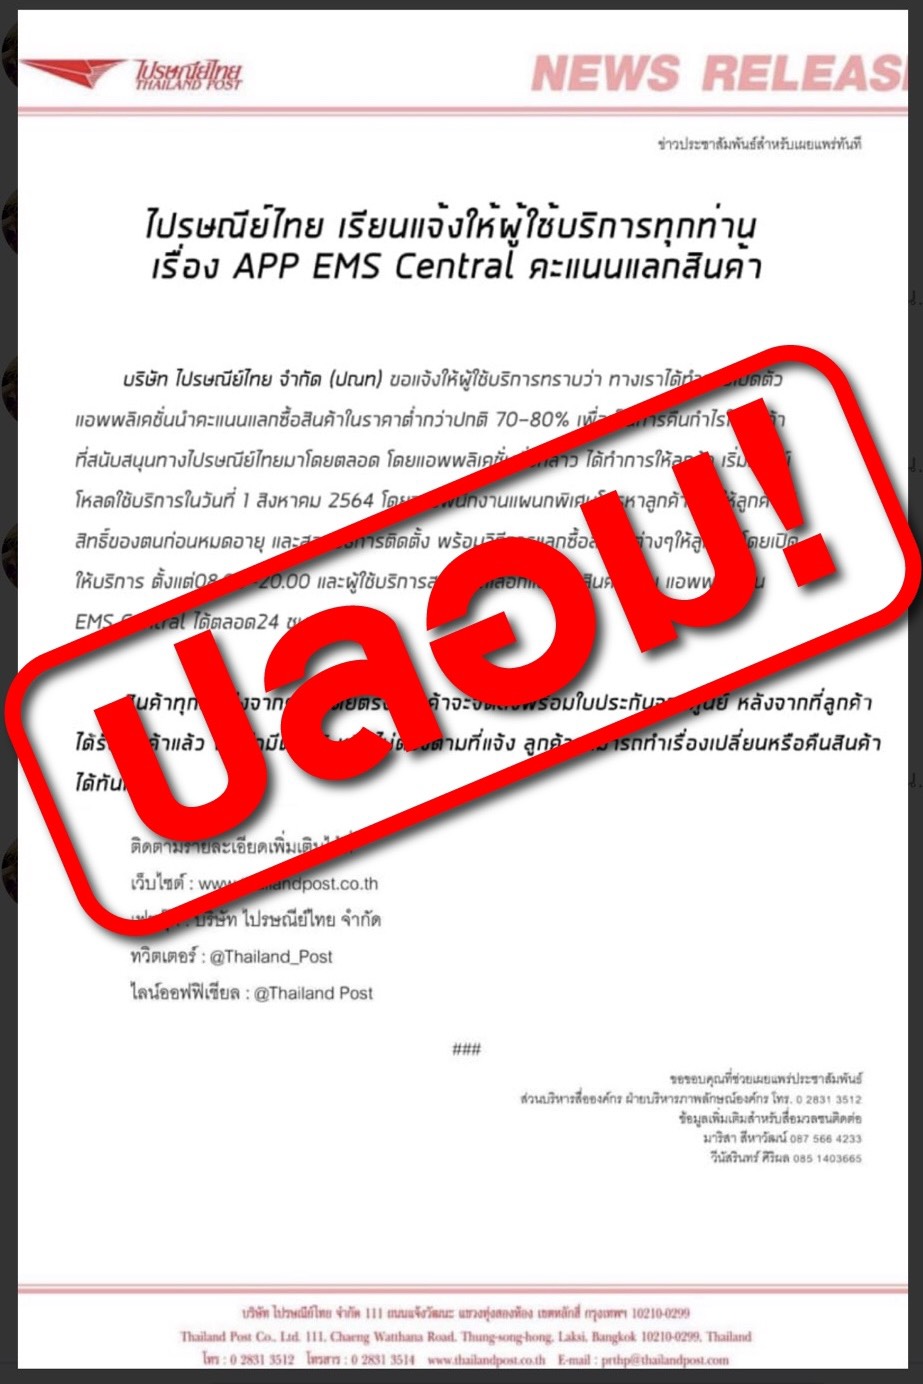 ไปรษณีย์ไทย เตือนระวังข่าวปลอม !! หลอกให้นำคะแนนมาแลกซื้อสินค้าในราคาพิเศษ พร้อมยืนยันเอาผิดผู้สร้างข่าวปลอมถึงที่สุด